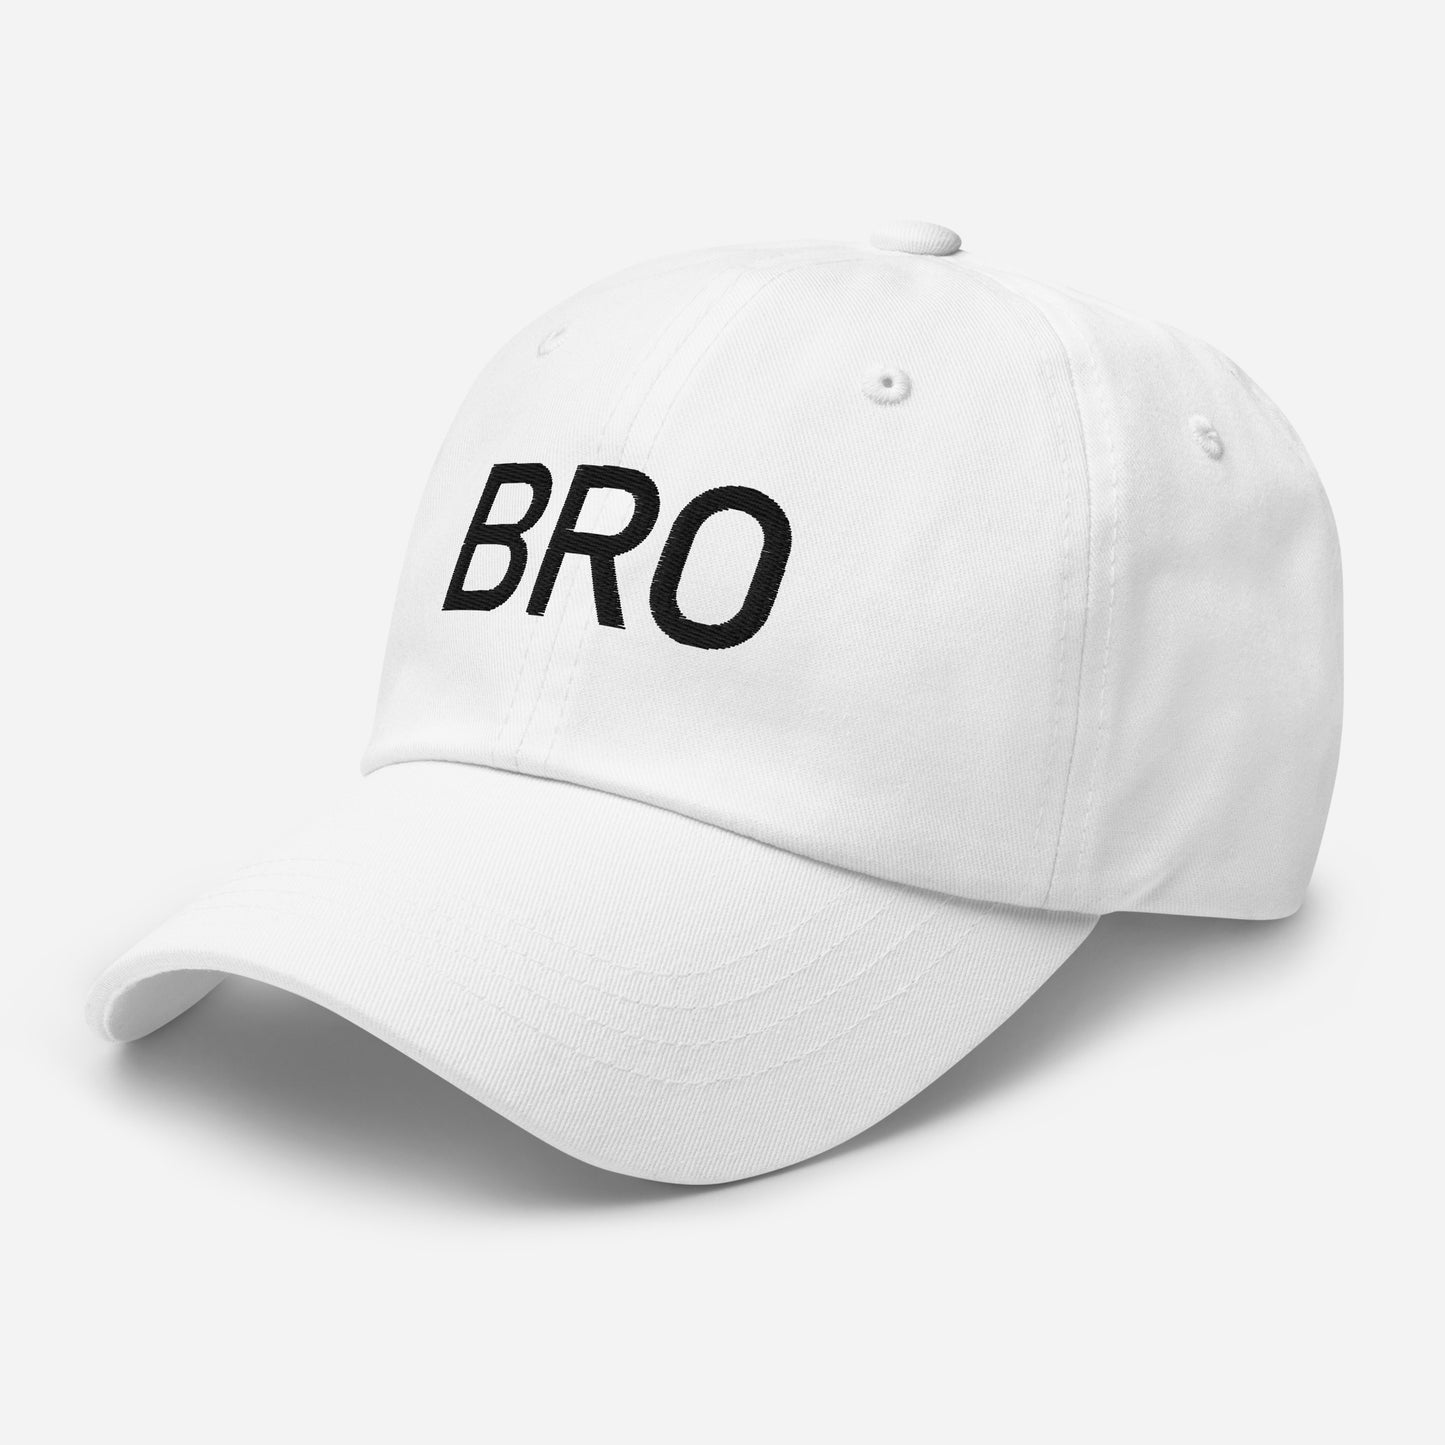 Bro - Sustainably Made Baseball Cap